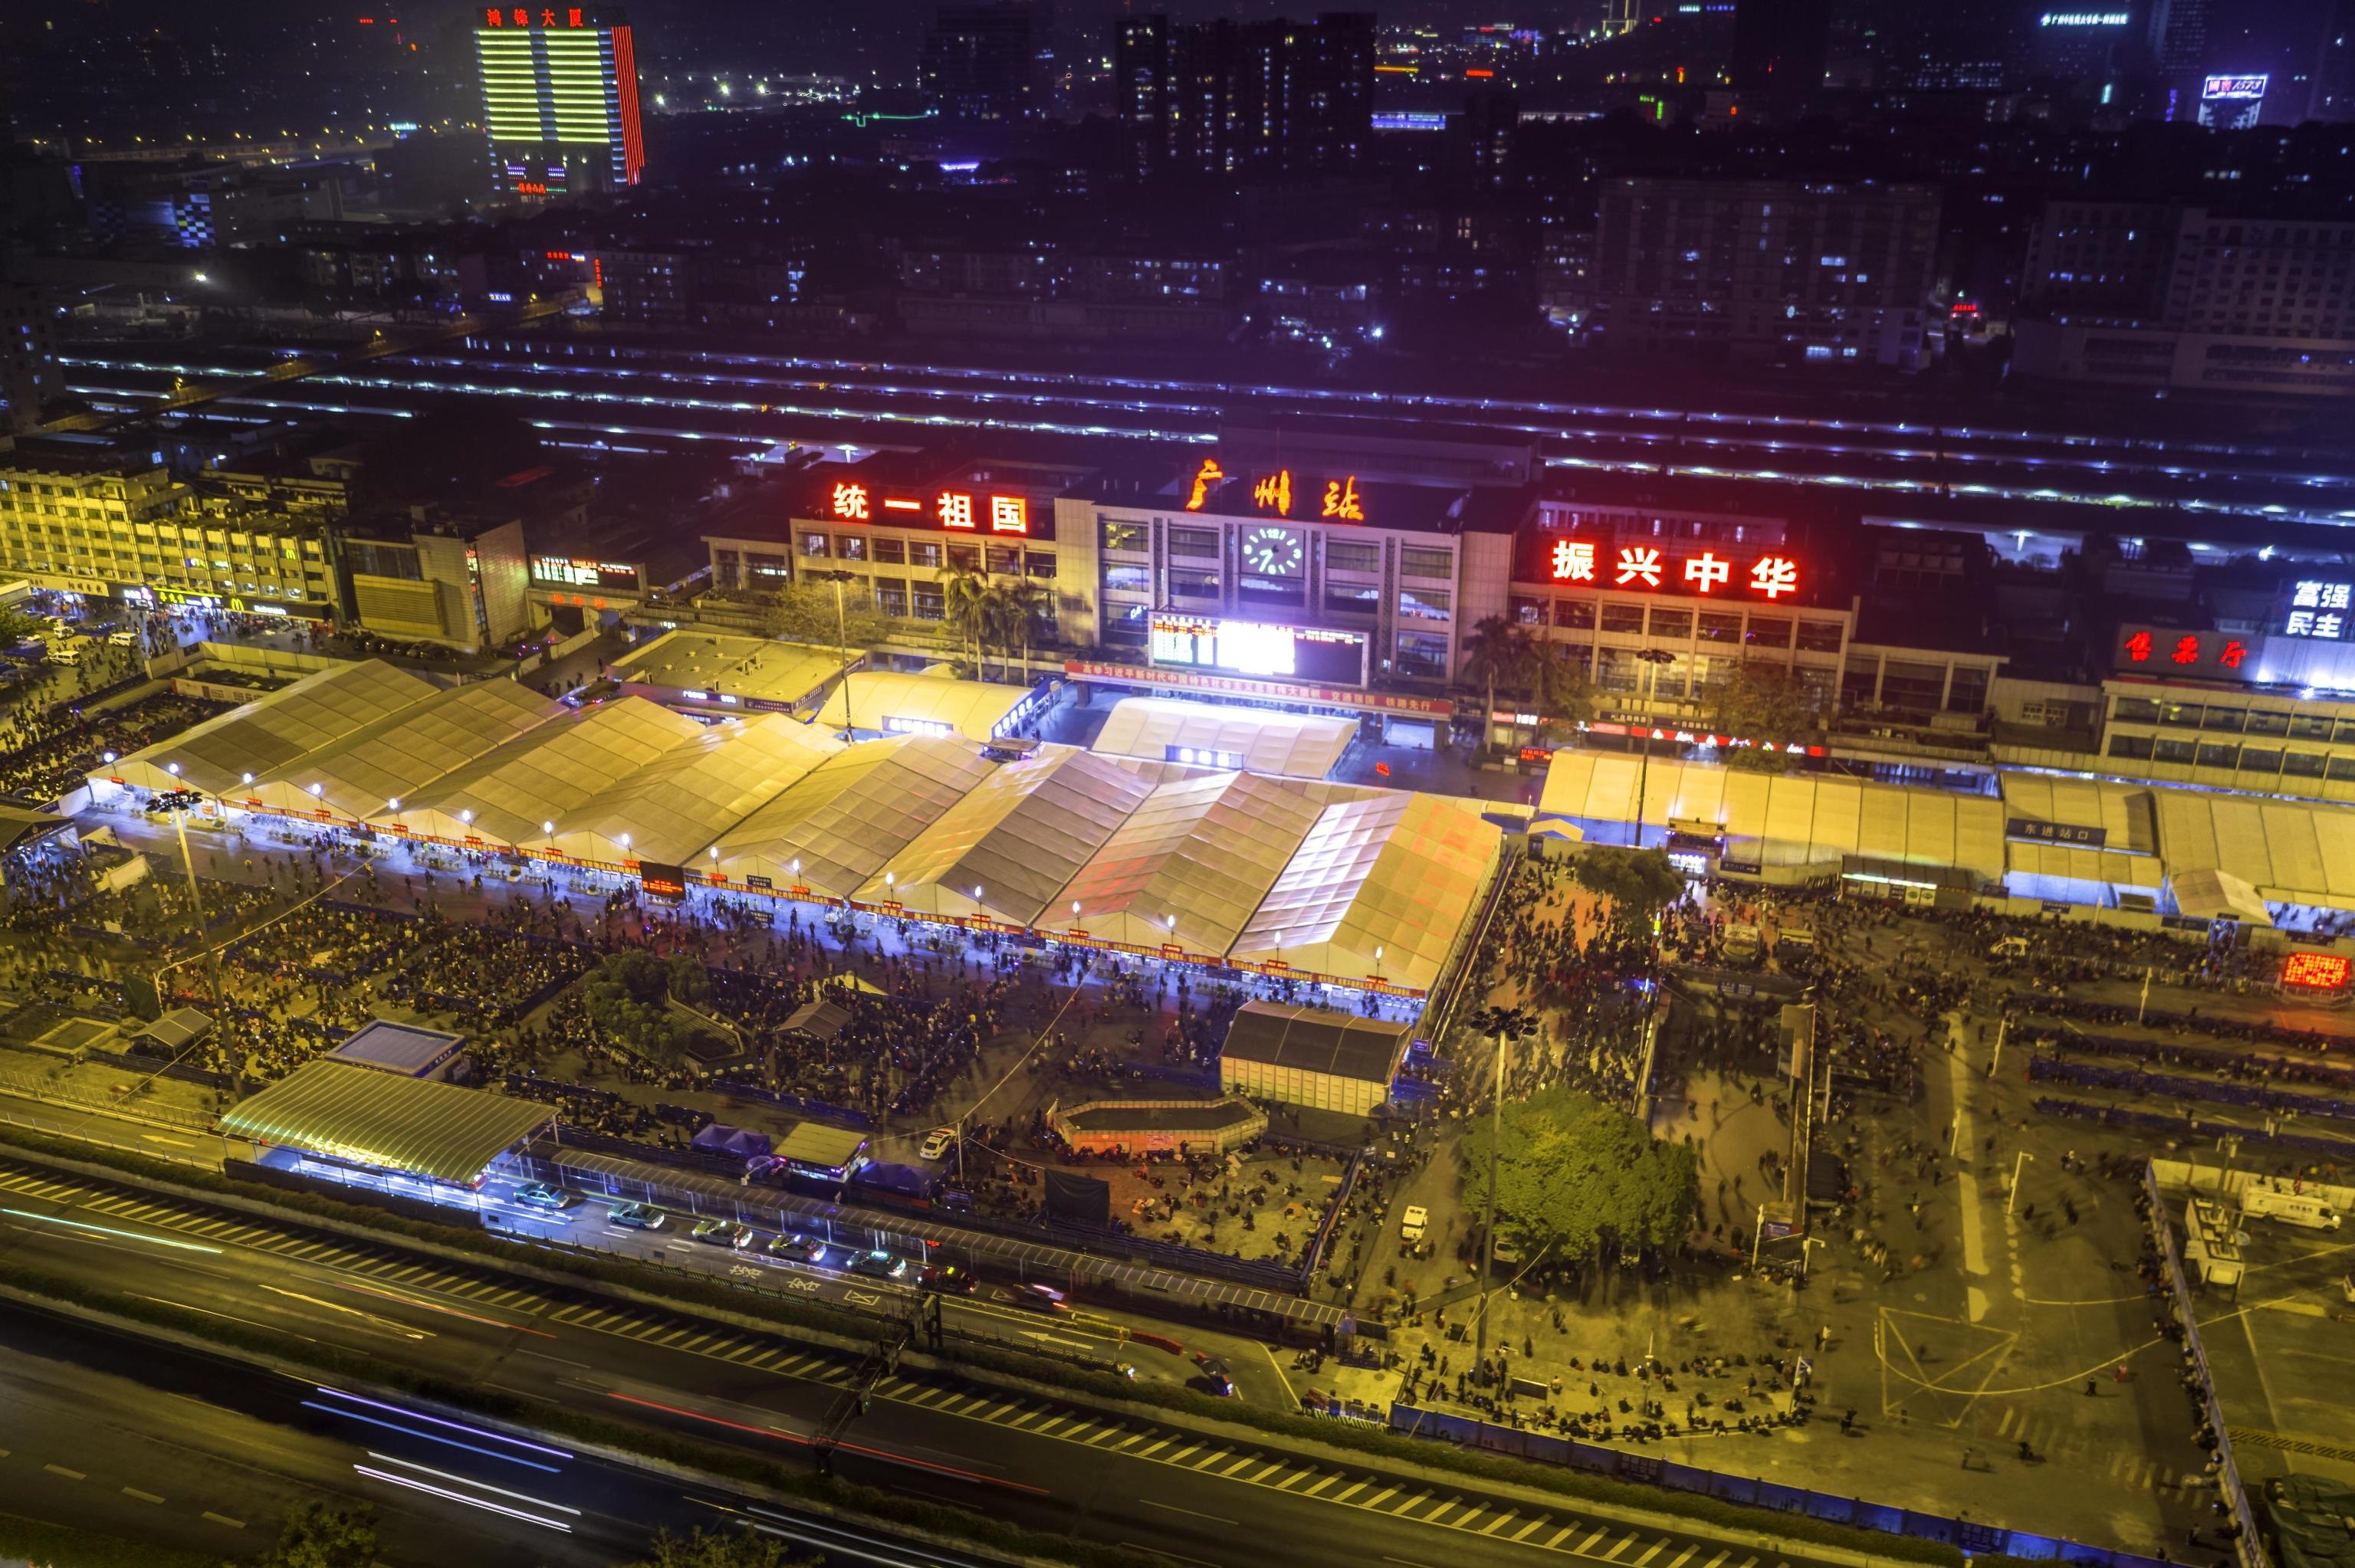 Vista aerea, ottenuta tramite un drone, dell'affollata stazione ferroviaria ad alta velocità di Guangzhou. In occasione del capodanno lunare cinese si verifica il più ingente spostamento di persone al mondo